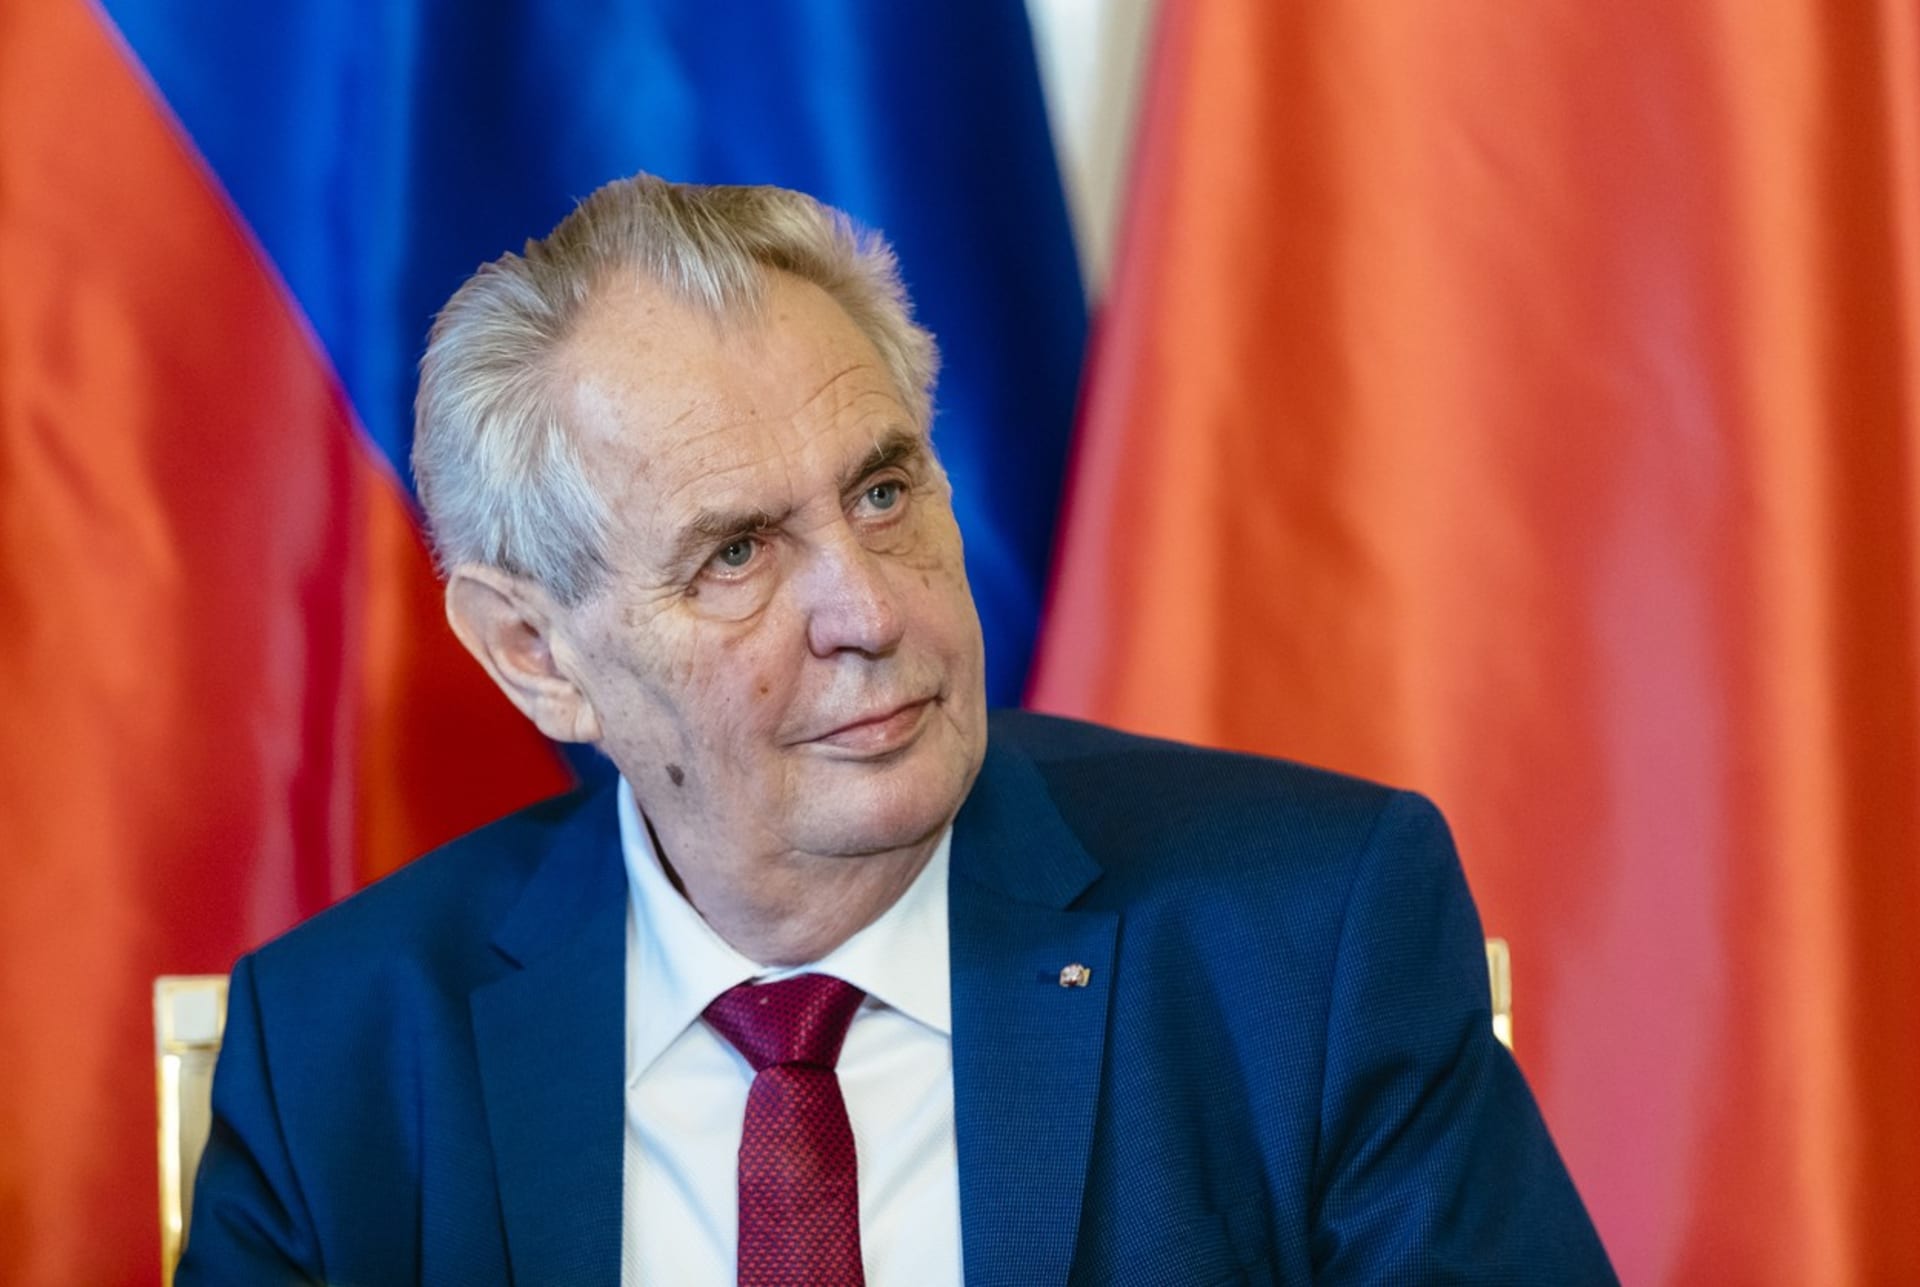 Prezident republiky Miloš Zeman nepojede do Moskvy na vojenskou přehlídku